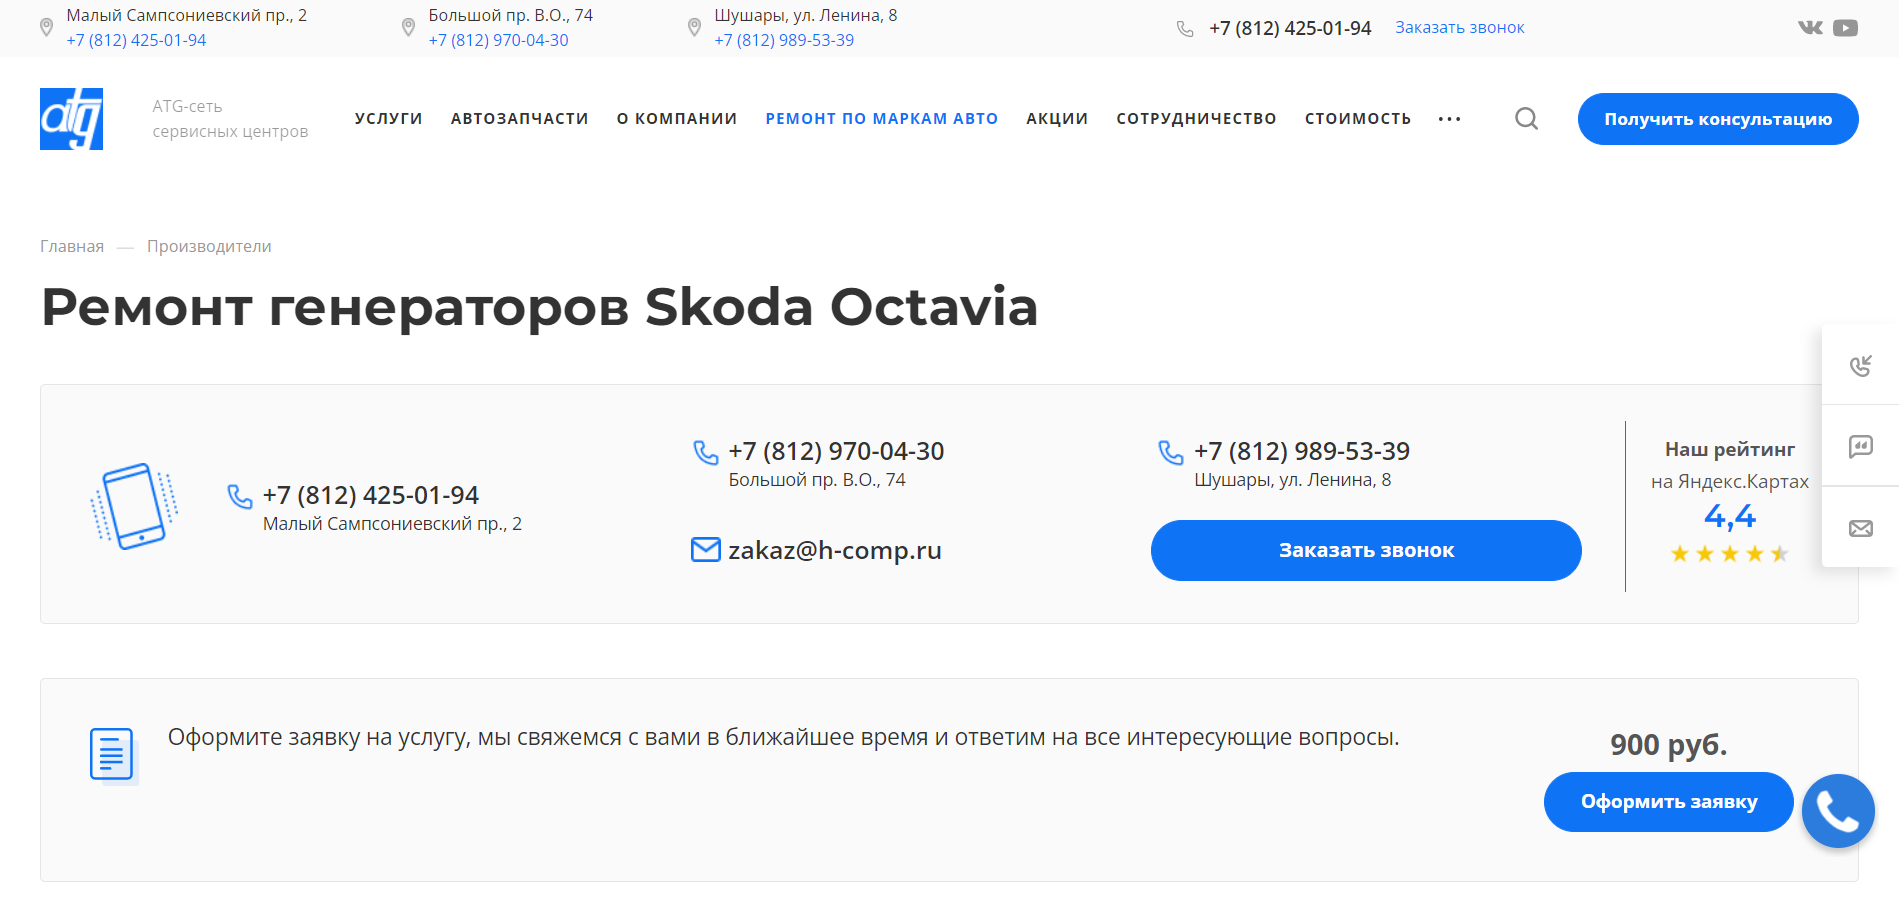 Ремонт генераторов Skoda Octavia